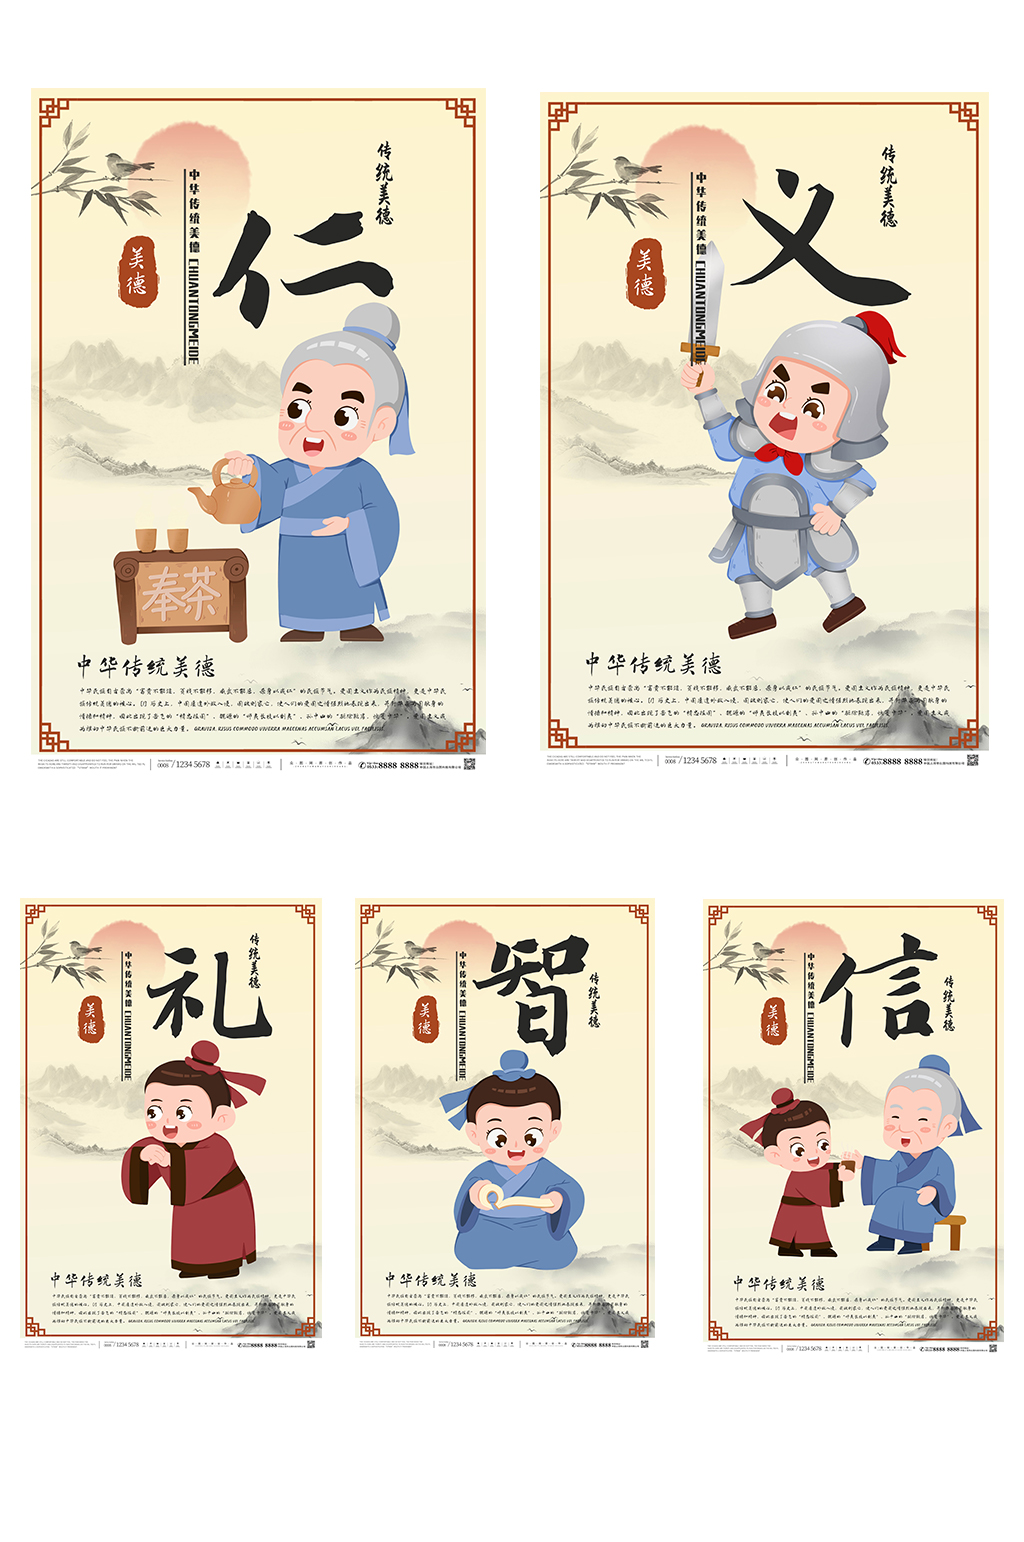 中国风仁义礼智信系列海报